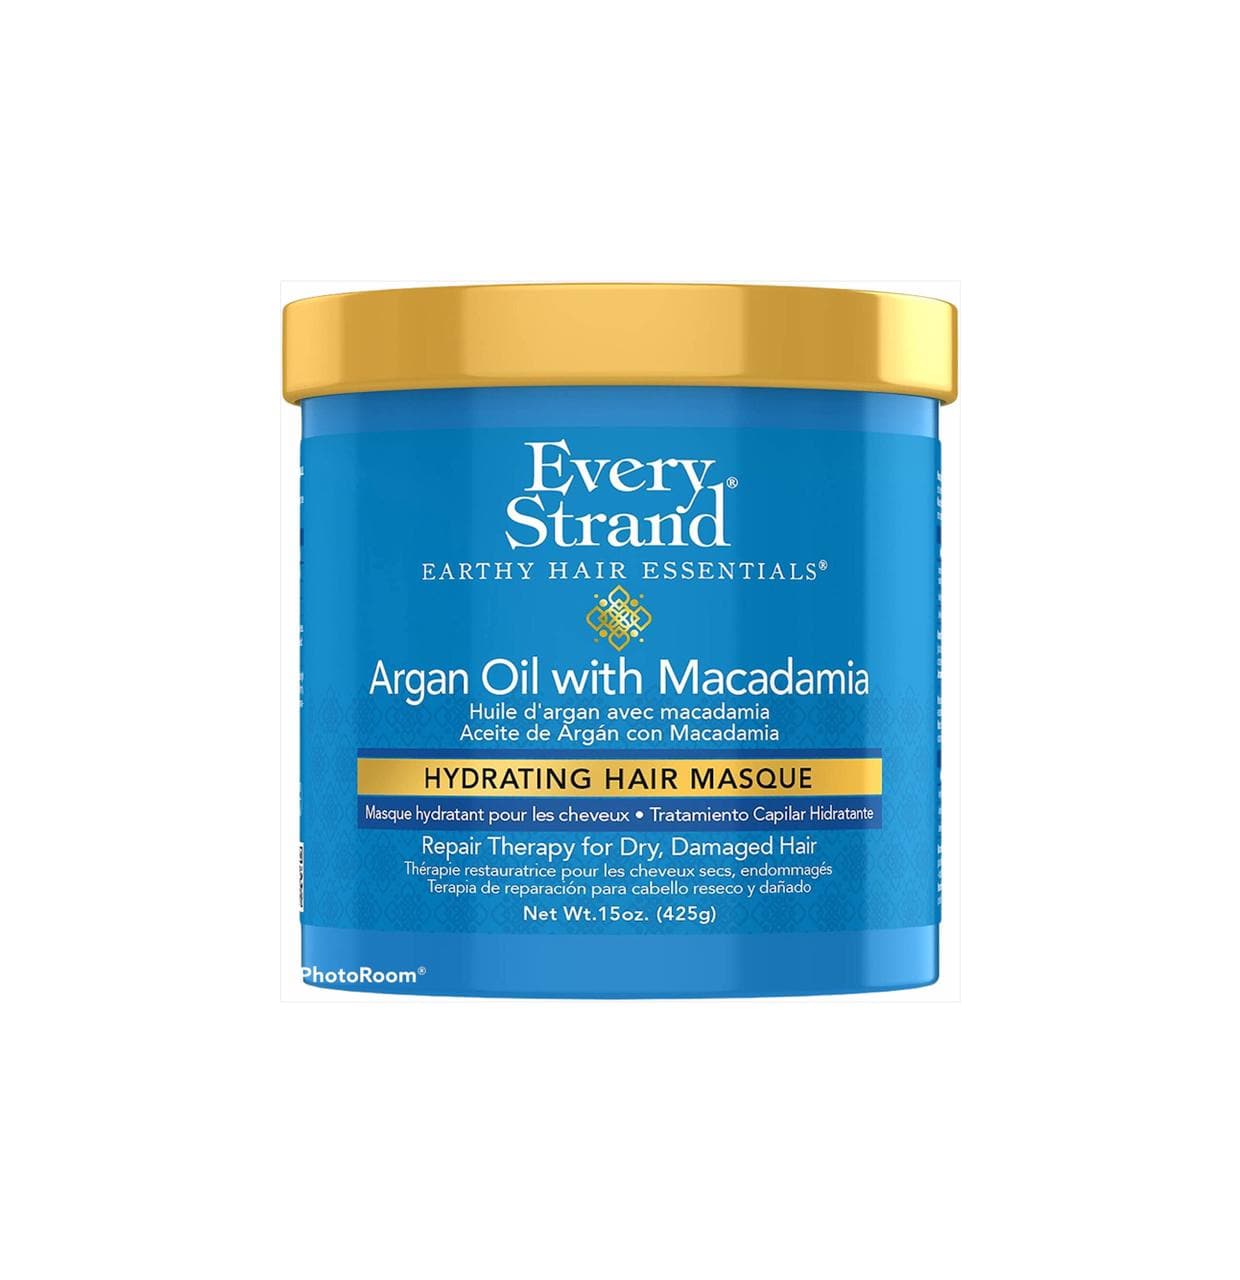 Every strand bath argan oil & macademia 425 gm ماسك مرطب للشعر بزيت الأرجان مع زيت المكاديميا - Instachiq